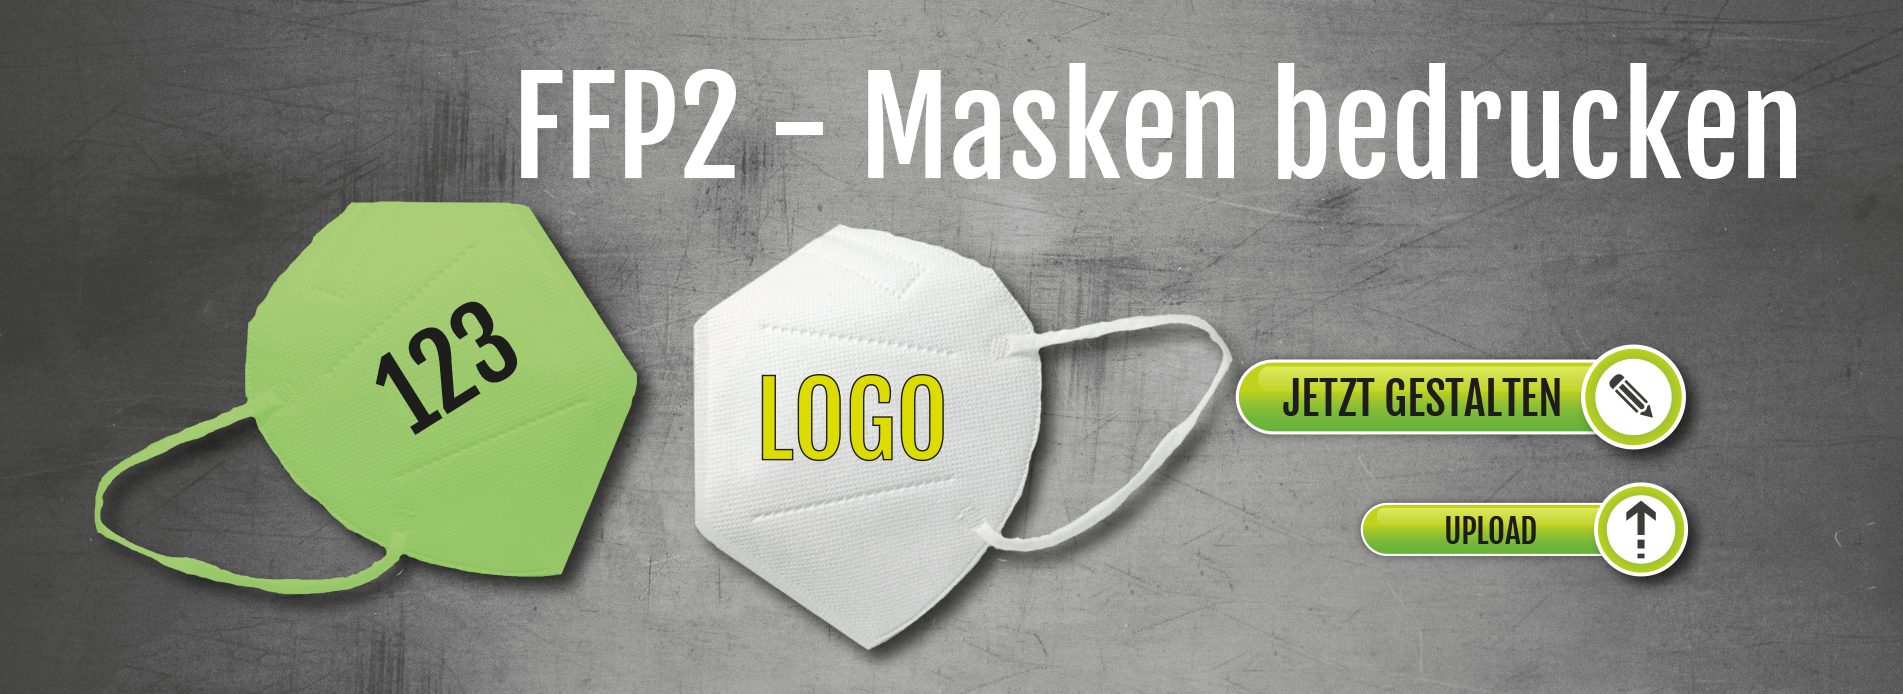 FFP2-Masken bedrucken | FFP2, KN95-Masken mit eigenem Logo-Druck